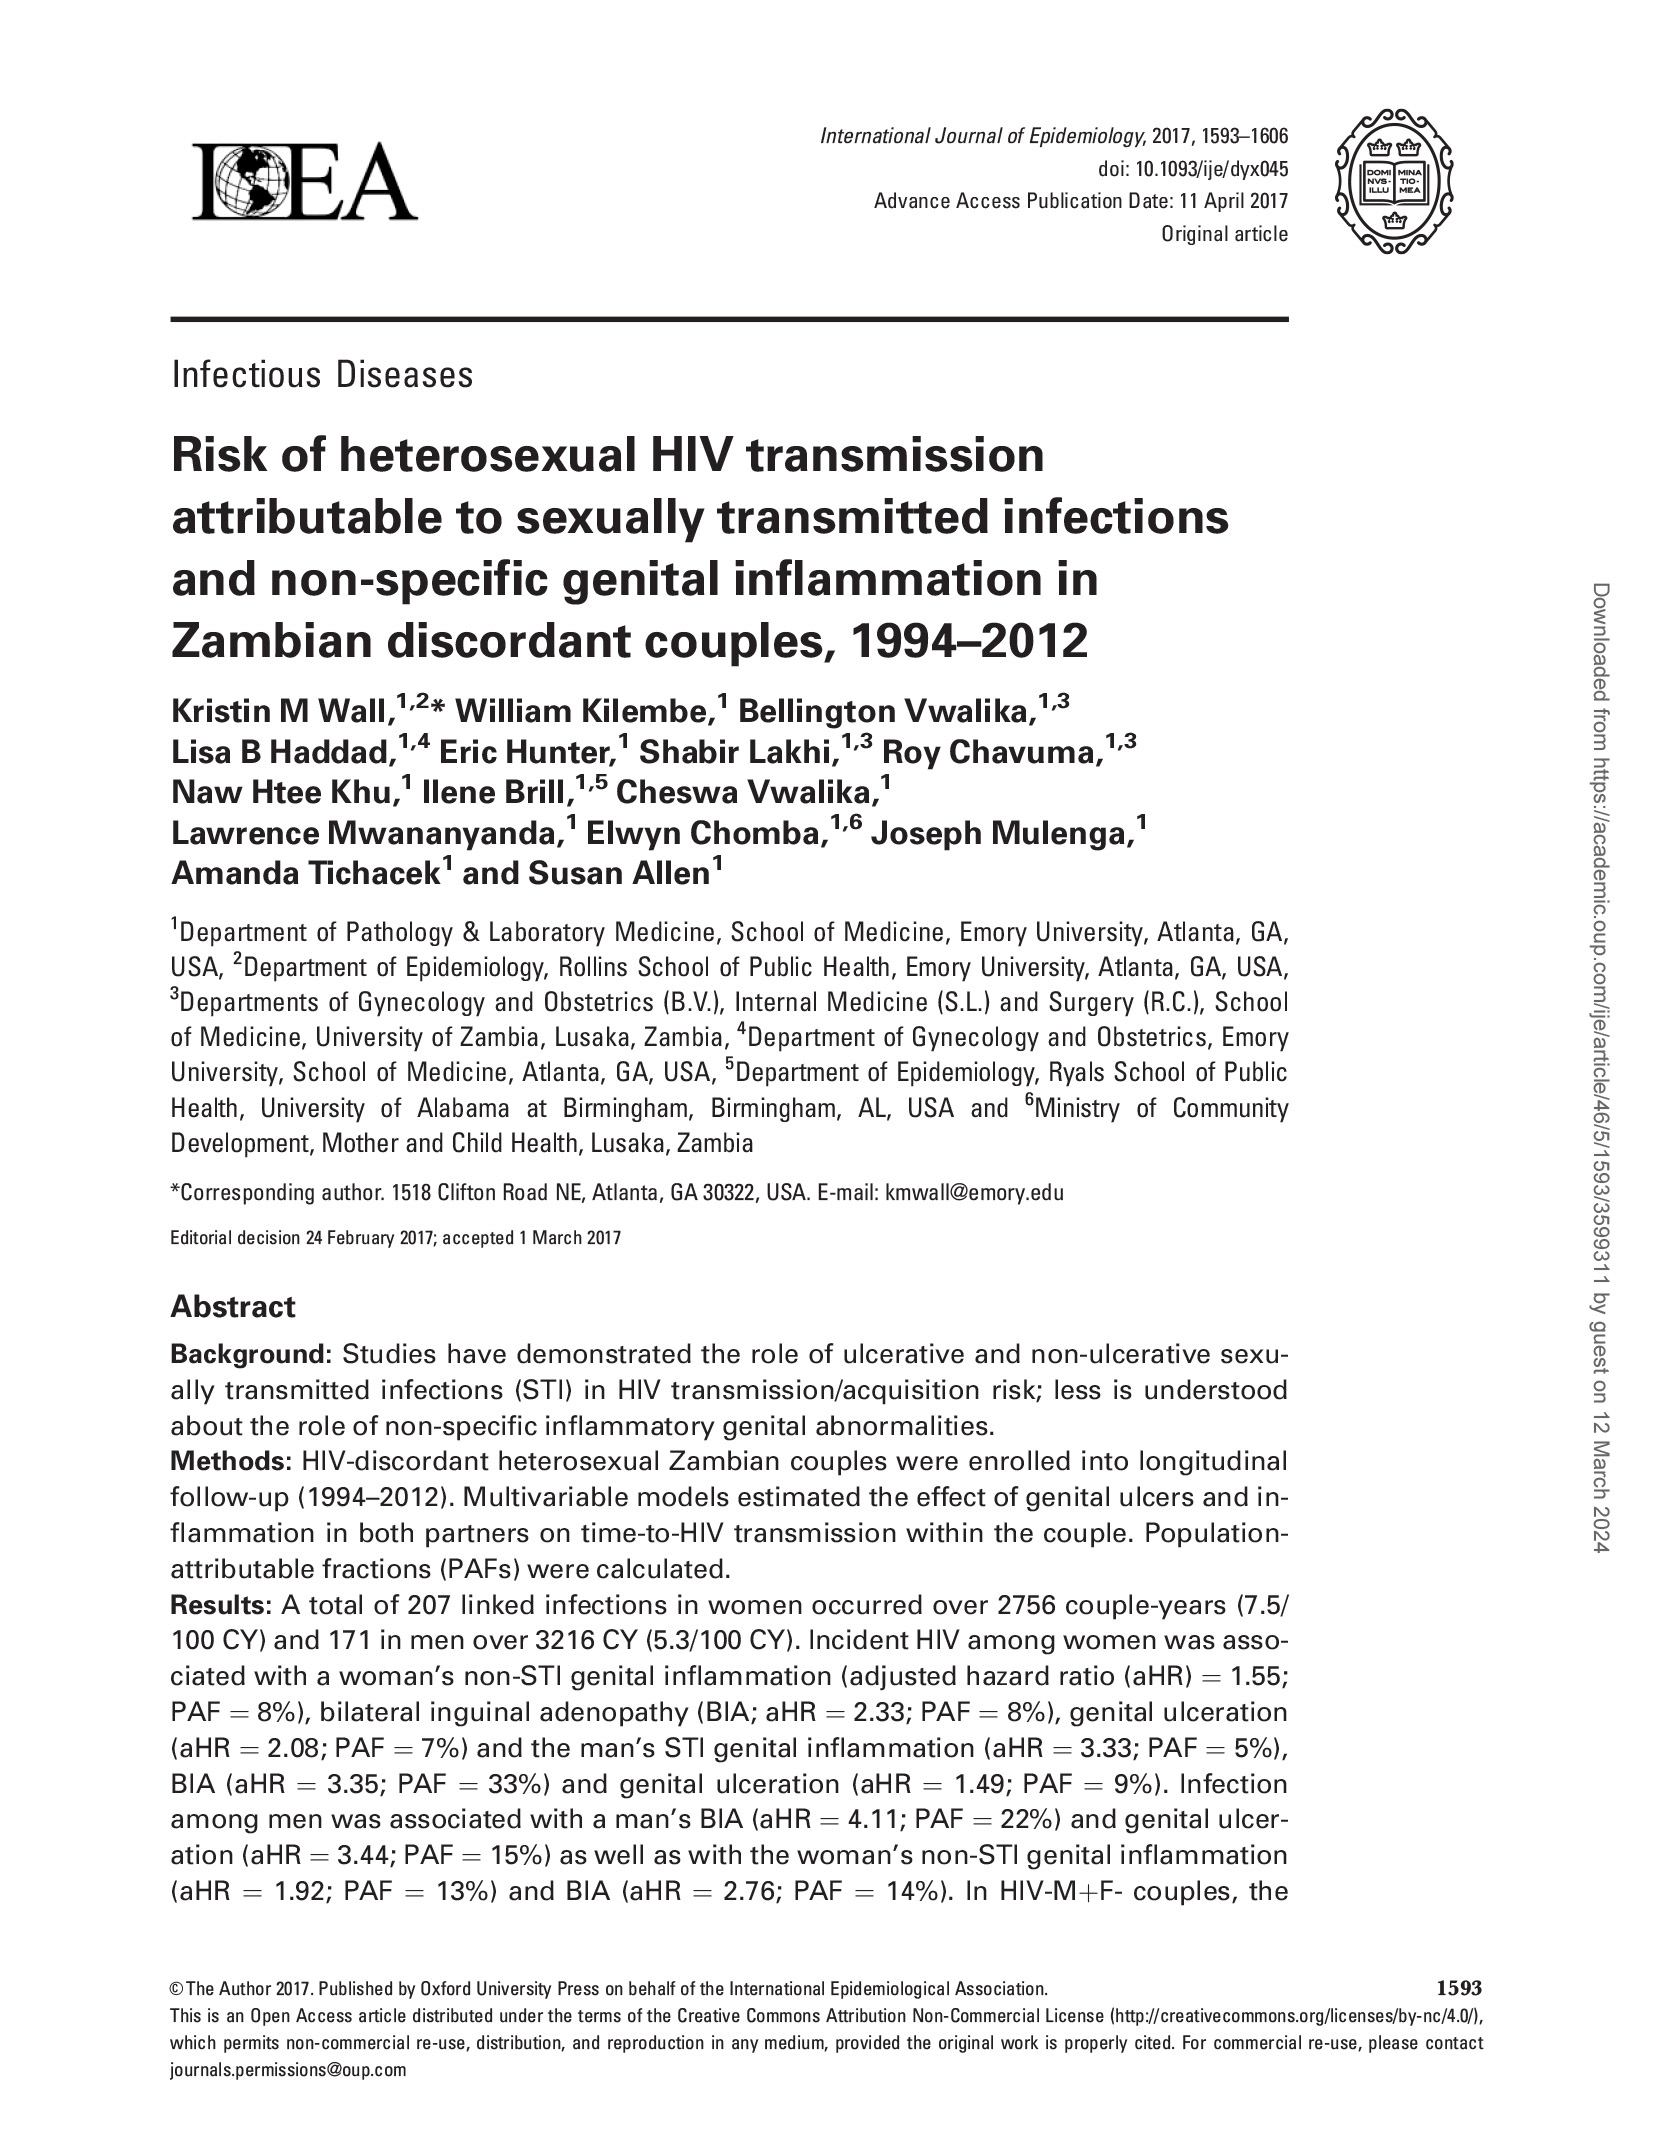 Risco de transmissão heterossexual do VIH atribuível a infecções sexualmente transmissíveis e inflamação genital não específica em casais discordantes da Zâmbia - capa